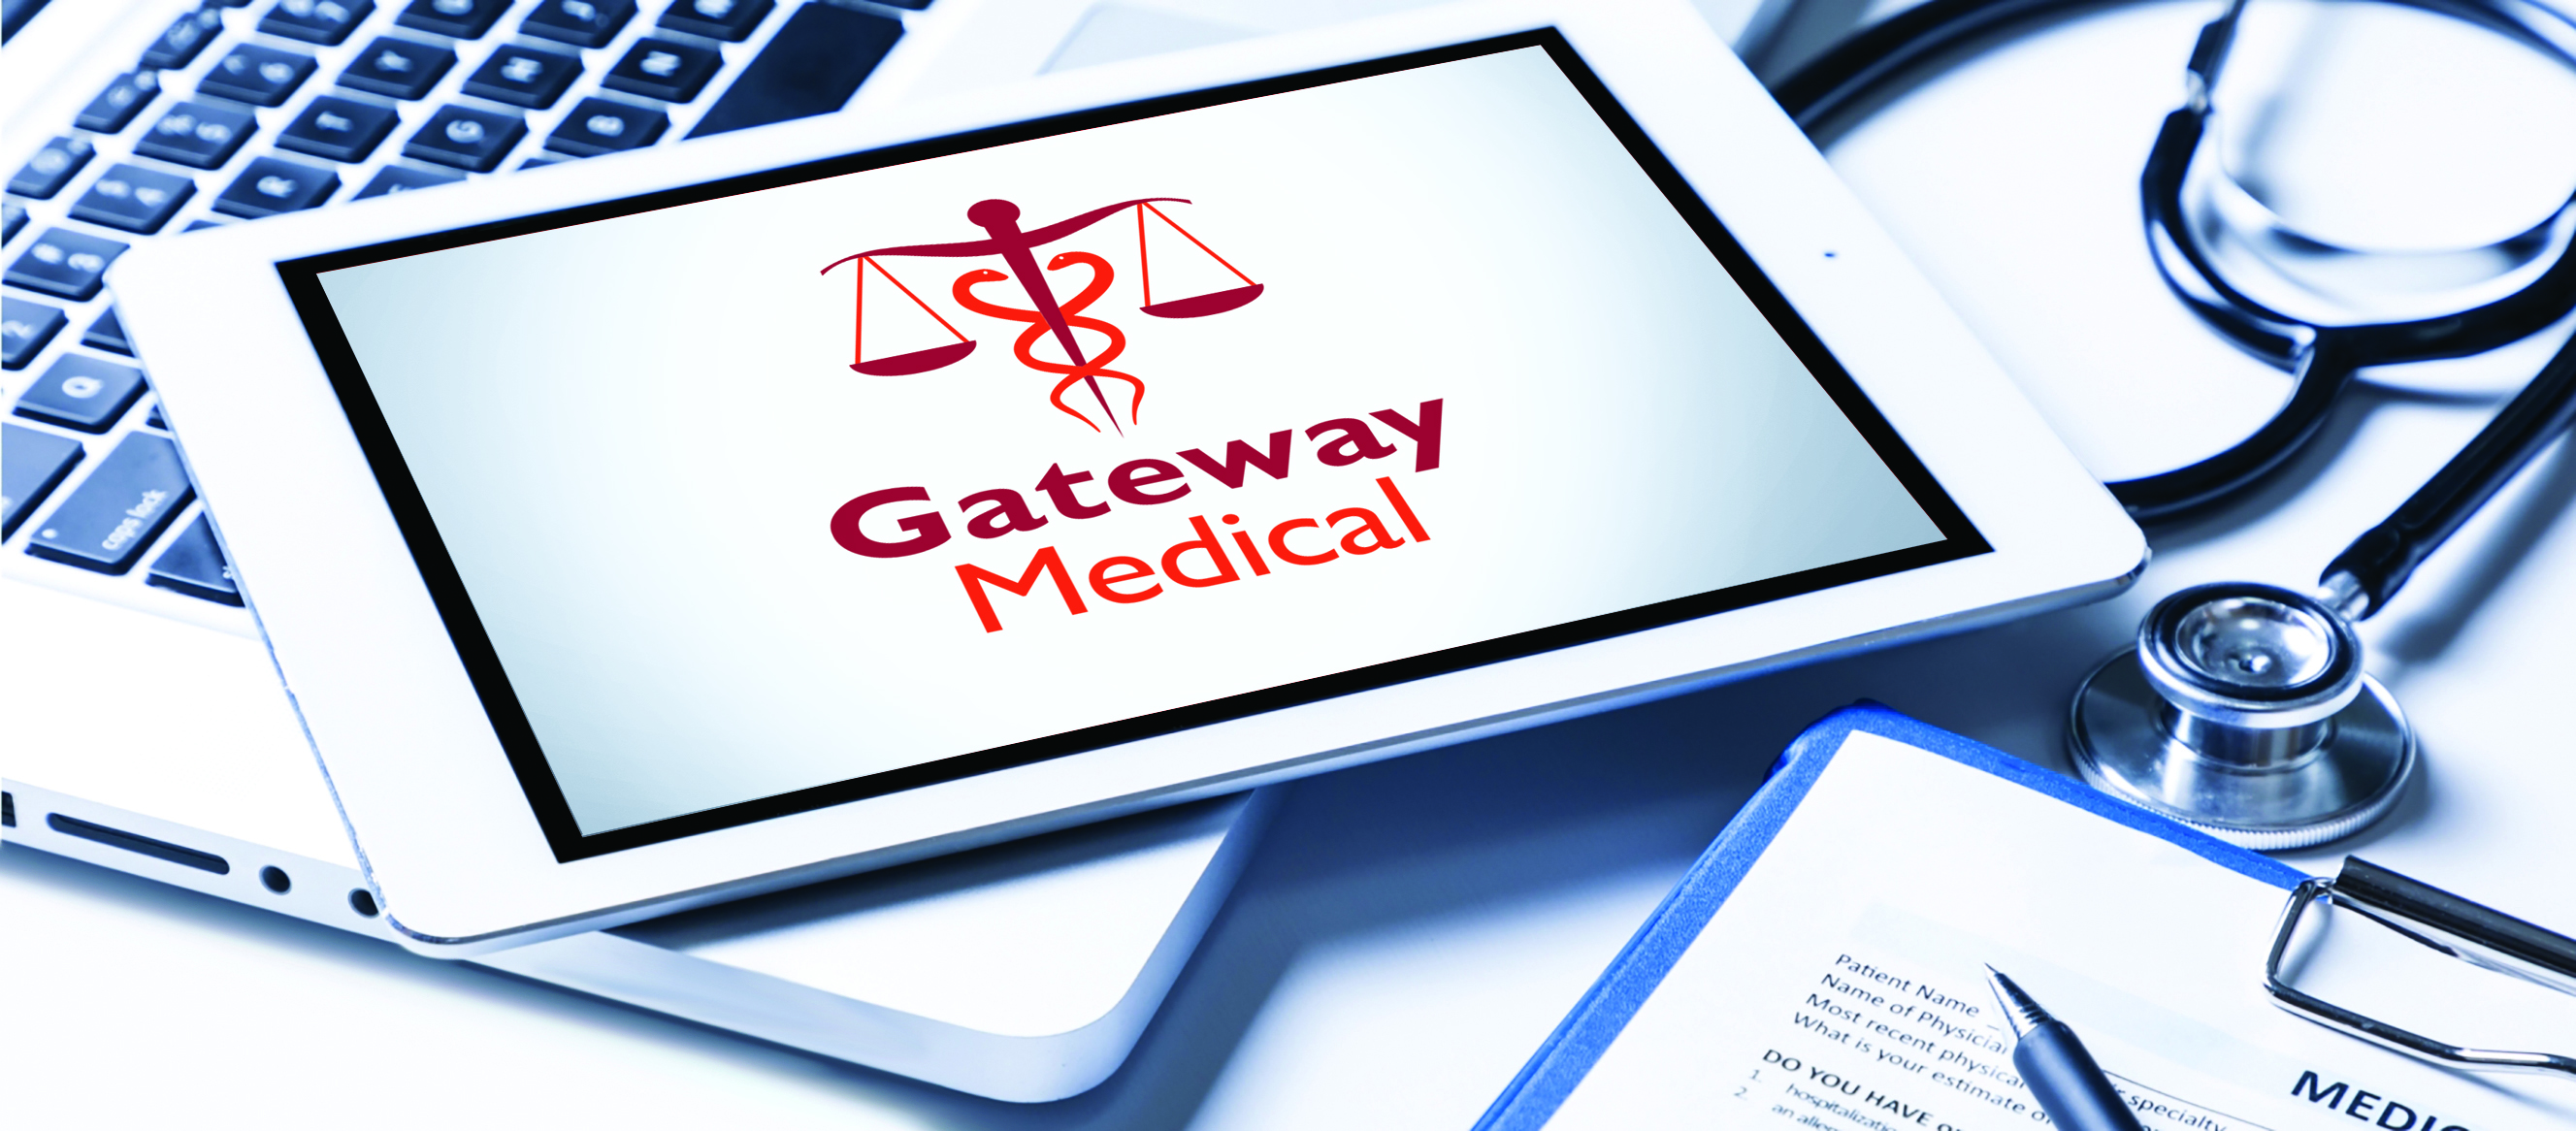 Gateway medical logo displayed on a tablet resting on a desk